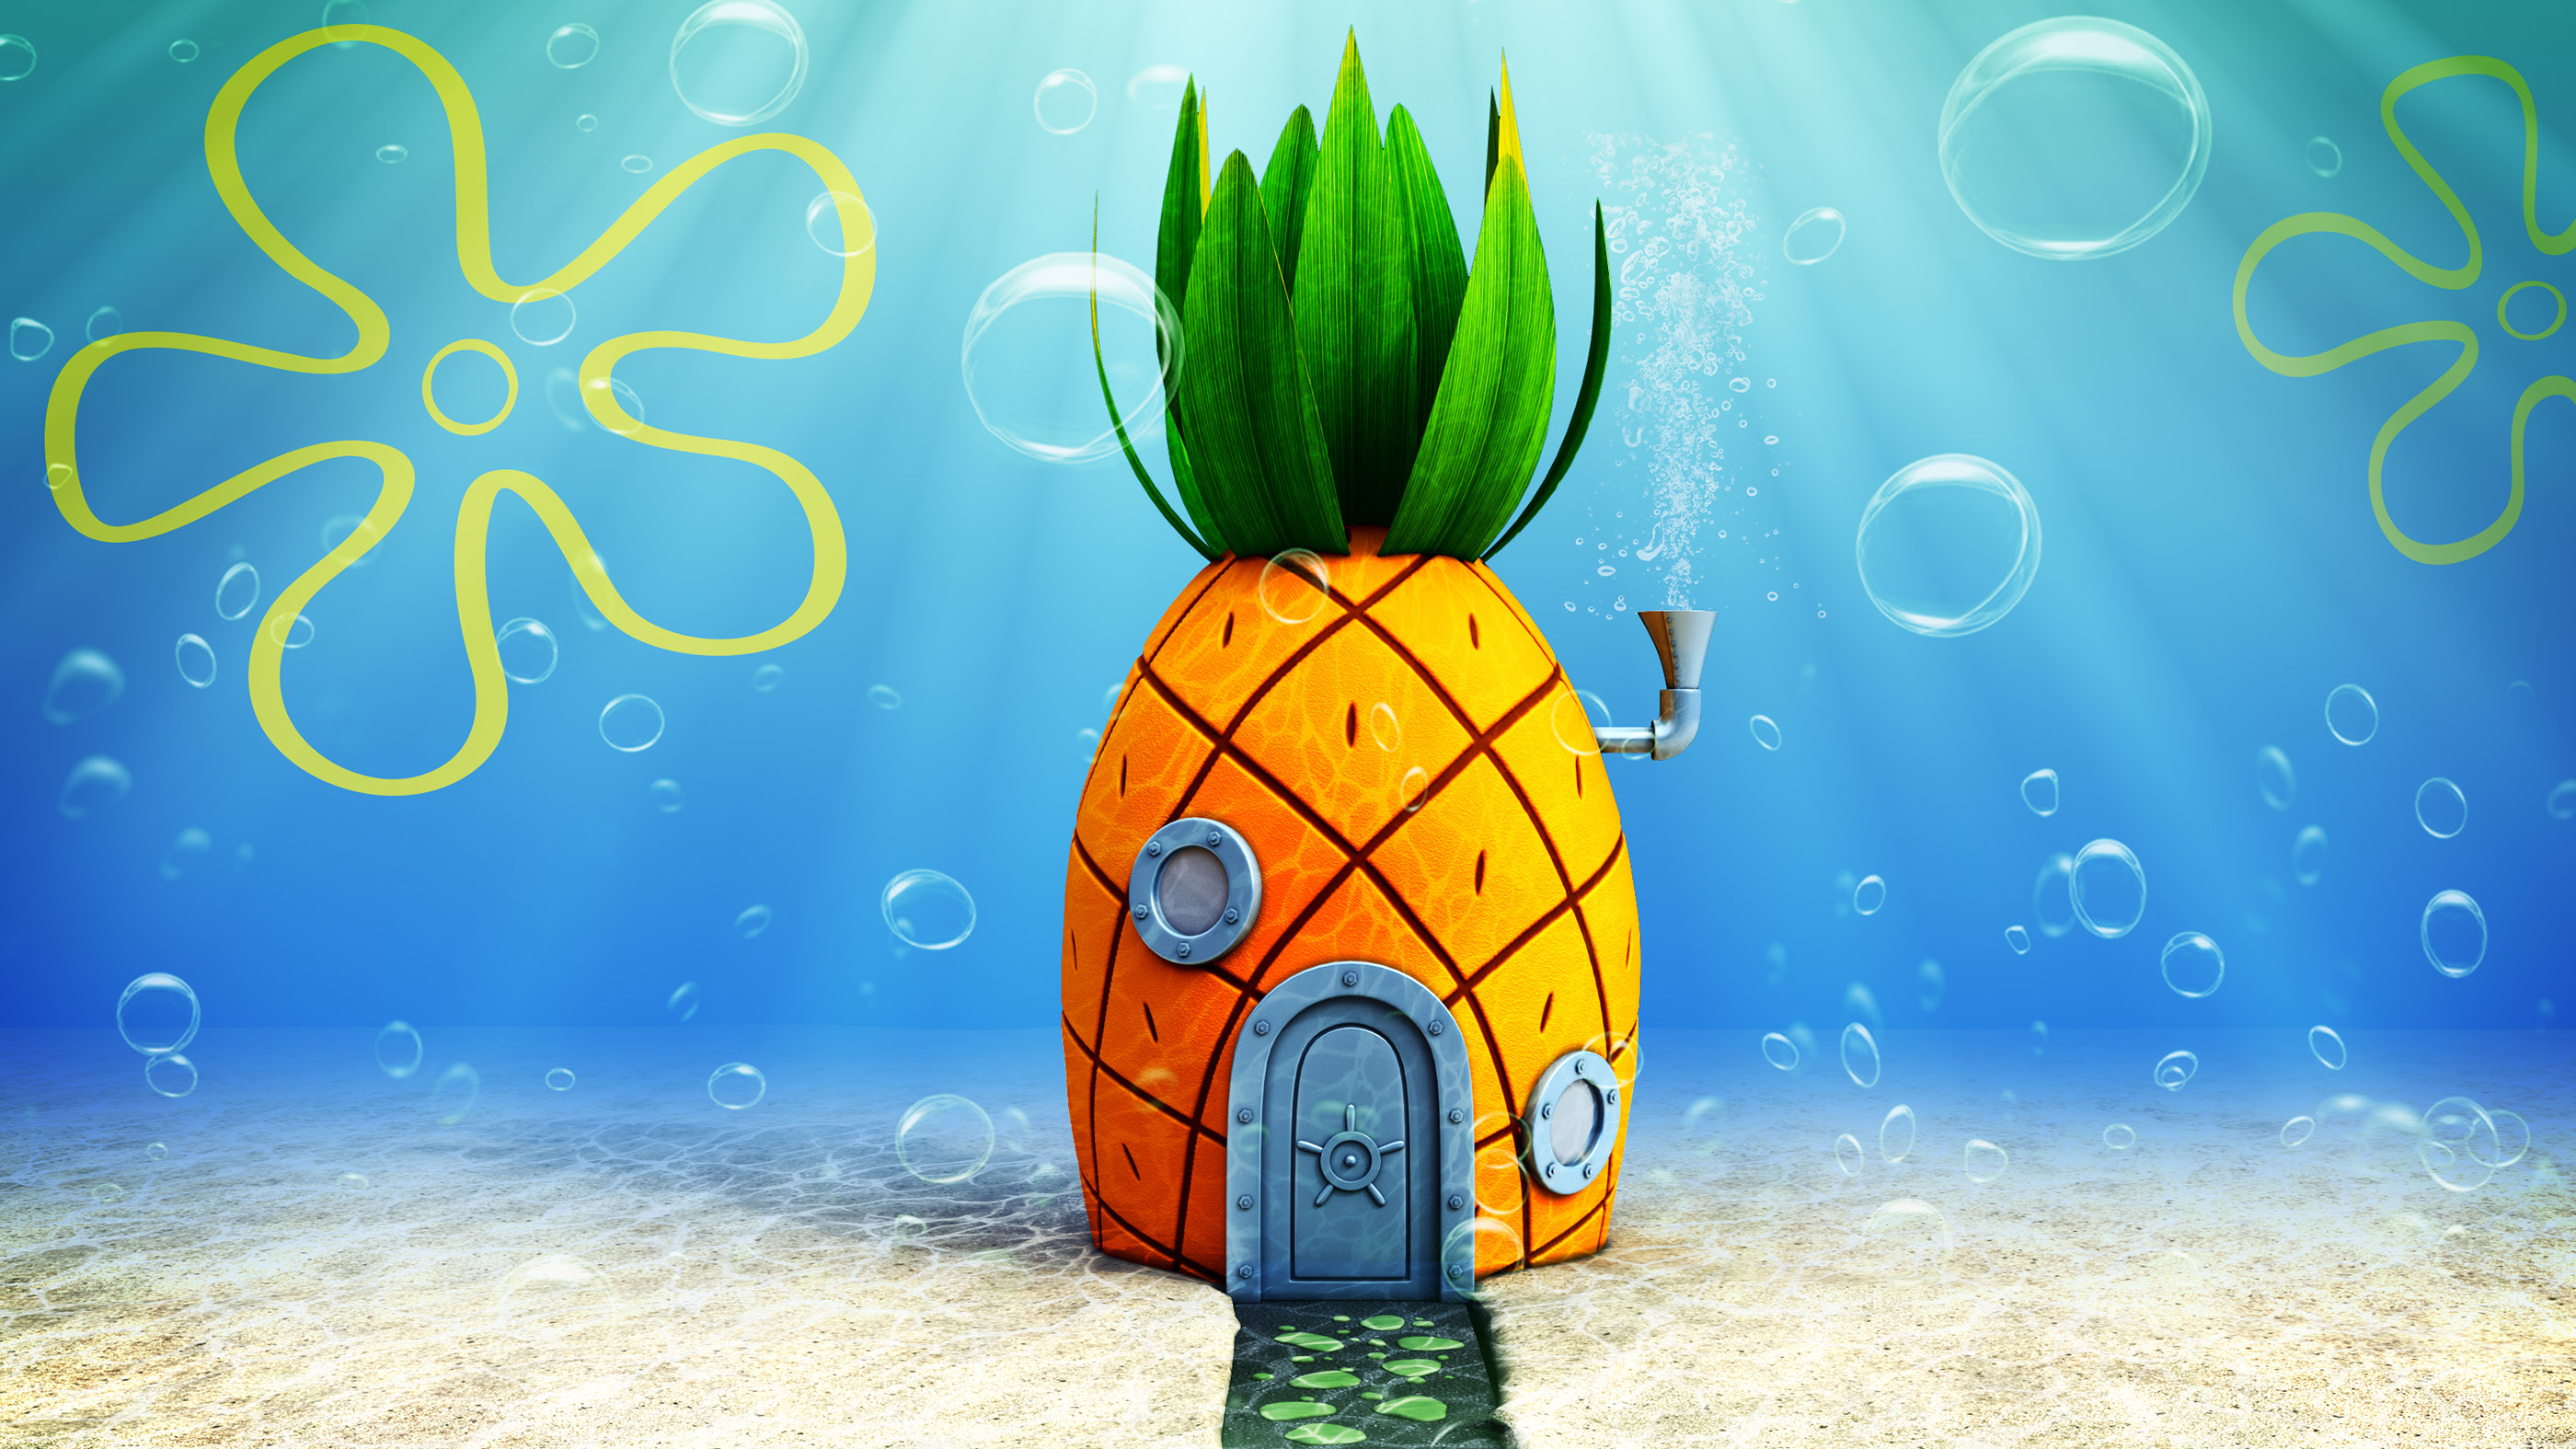 3D - House of SpongeBob SquarePants.